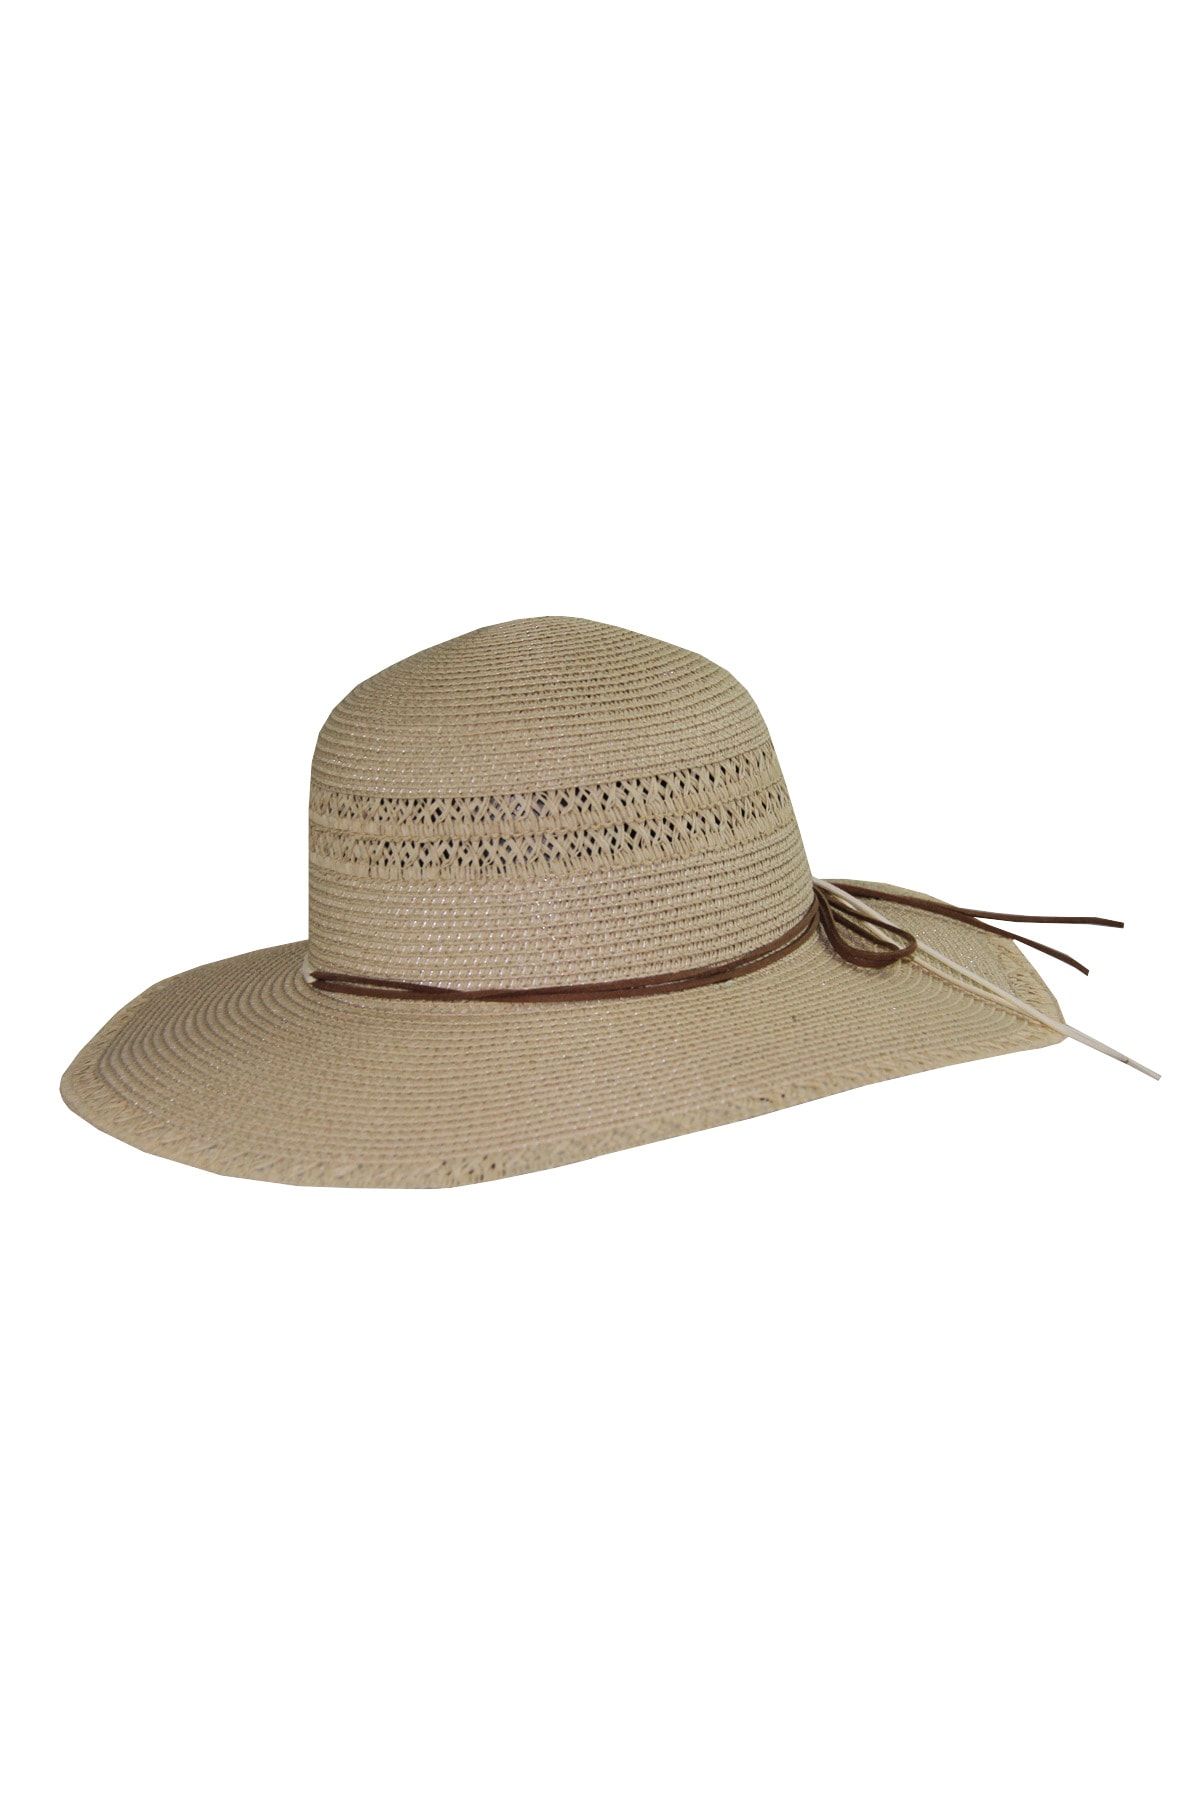 Bay Şapkacı Geniş Kenarlı Hasır Kadın Şapka 3859